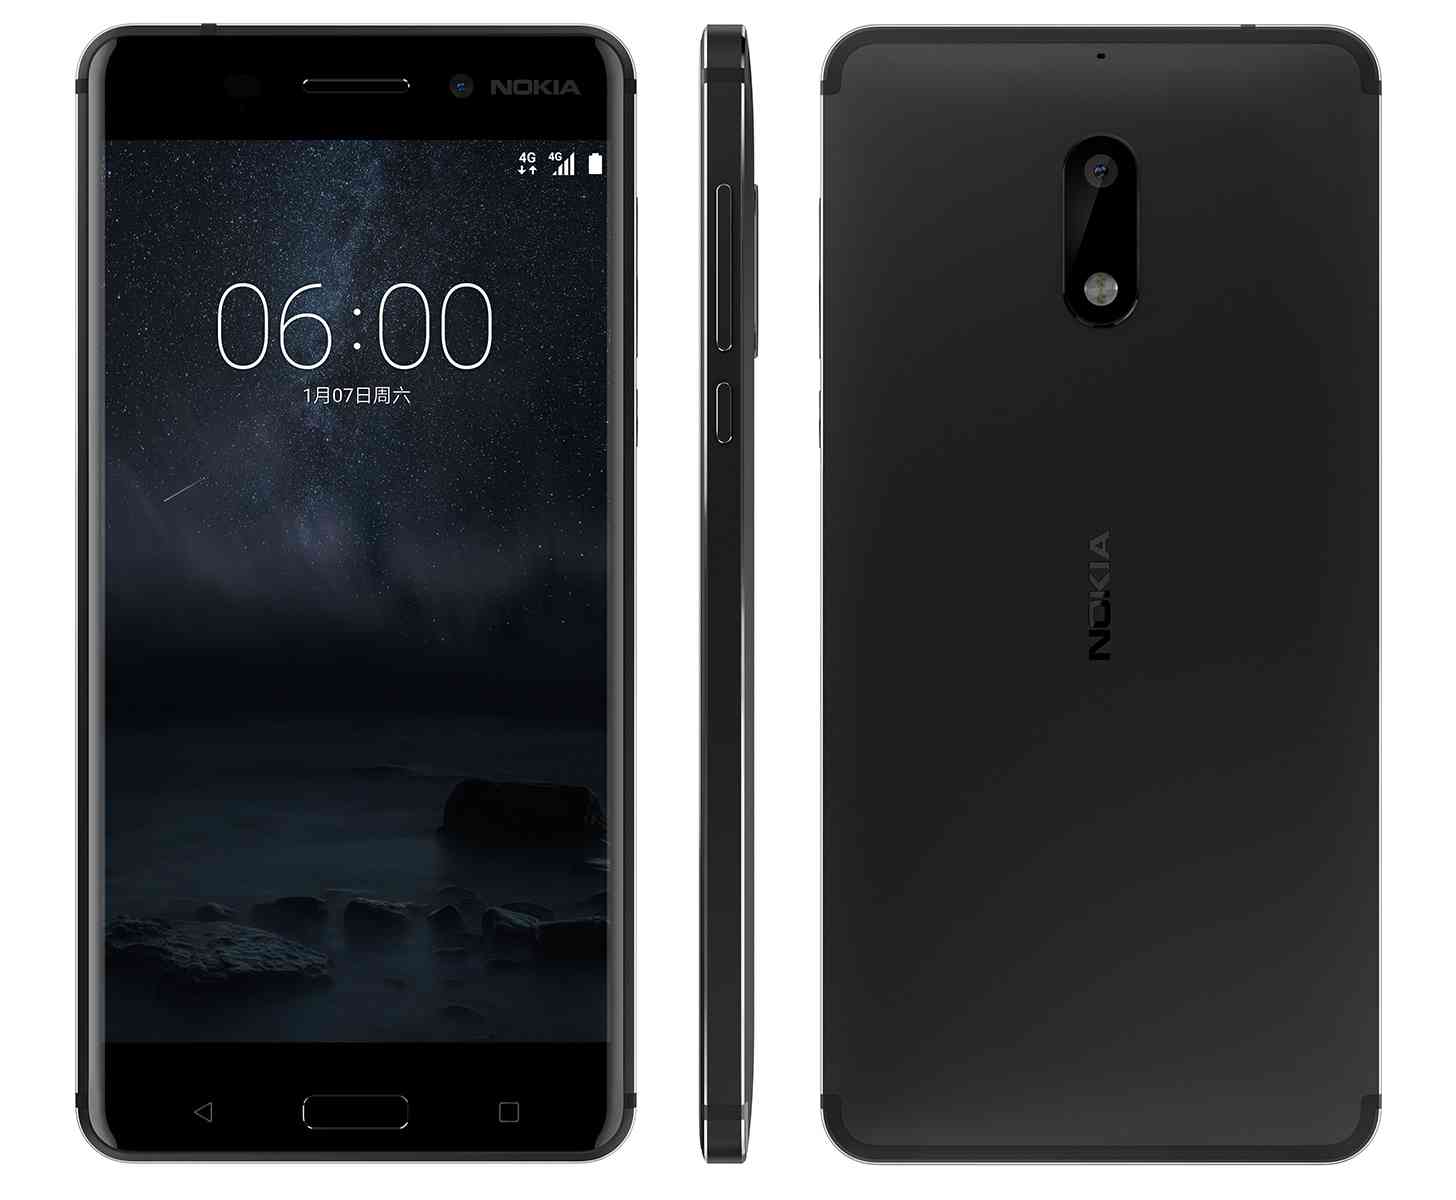 Fabricante Nokia anunciou novo smartphone “Nokia 6” com Android e corpo metálico